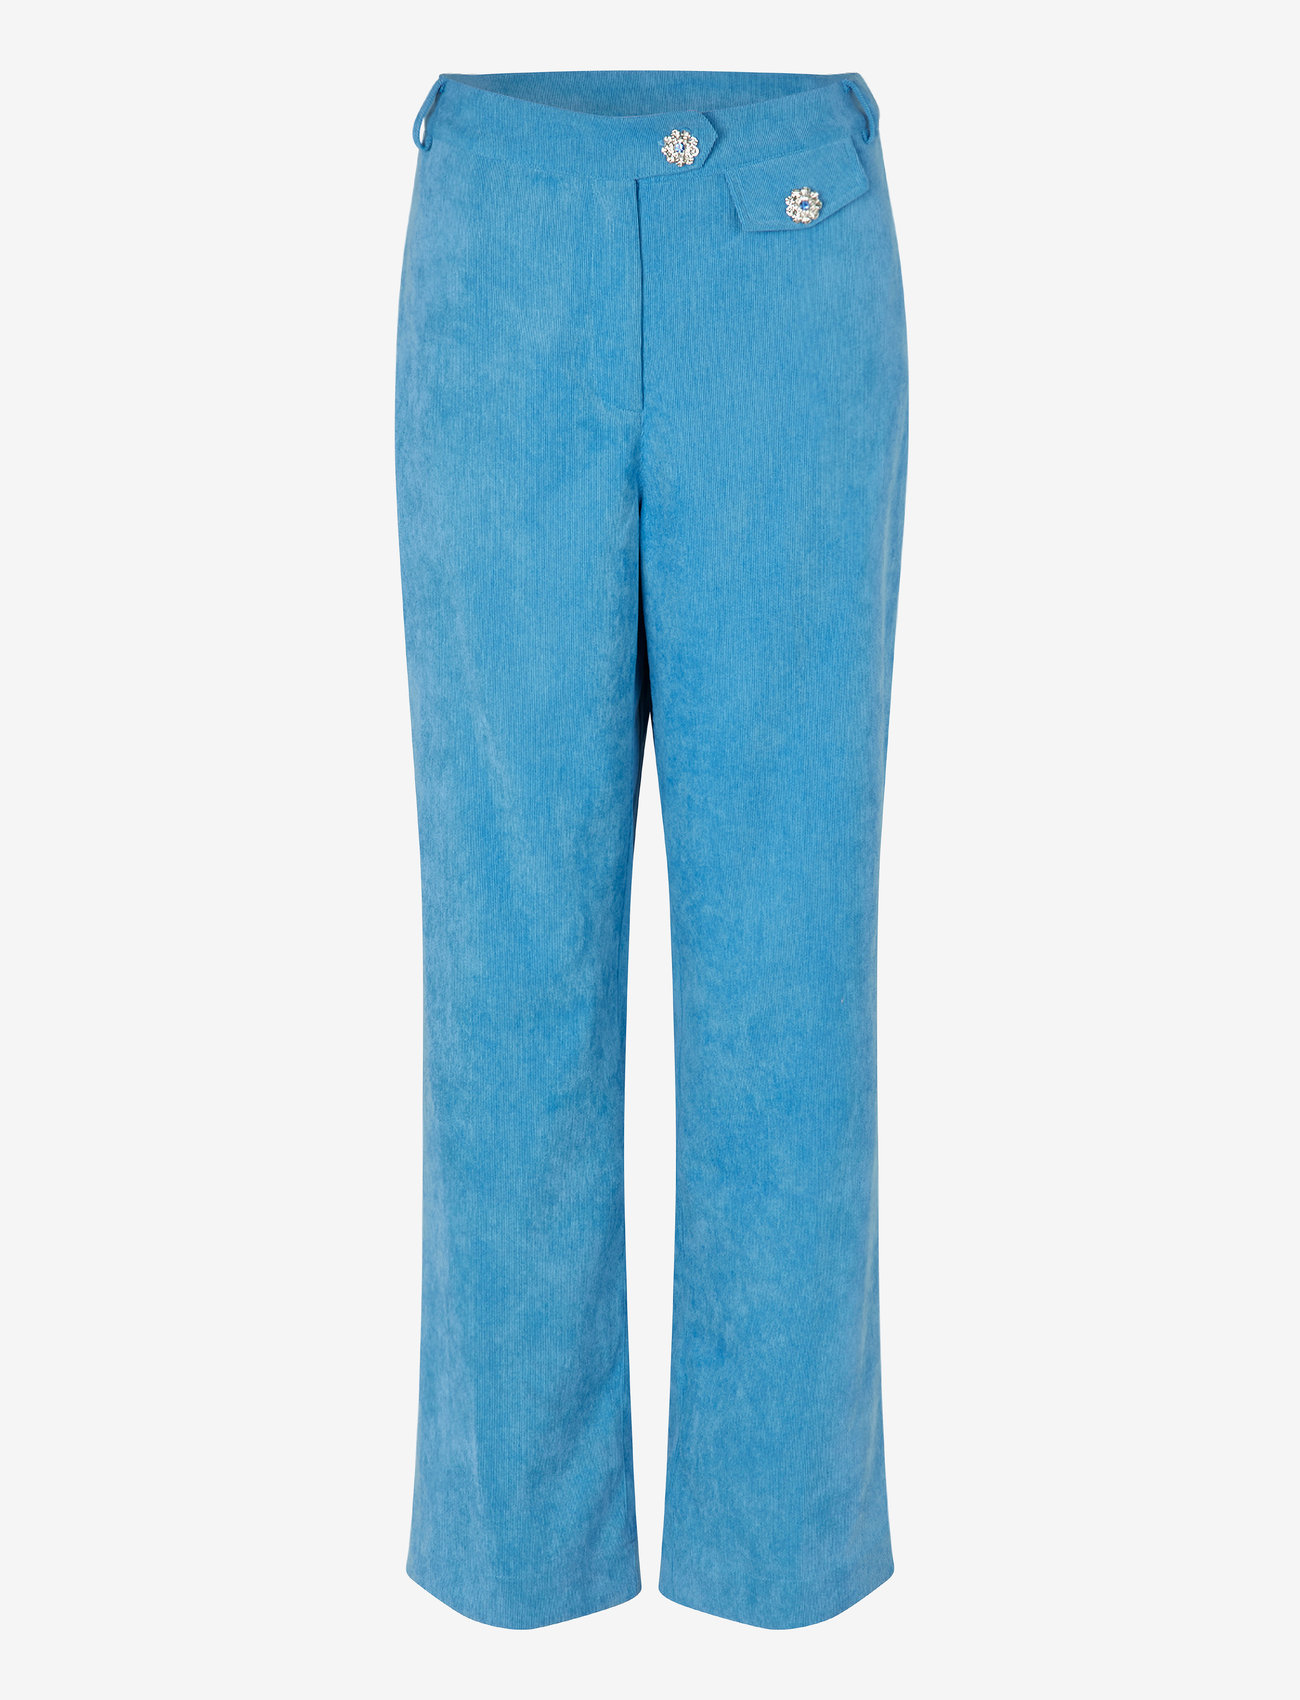 Cras - Celinecras Pants - rette bukser - azure blue - 0